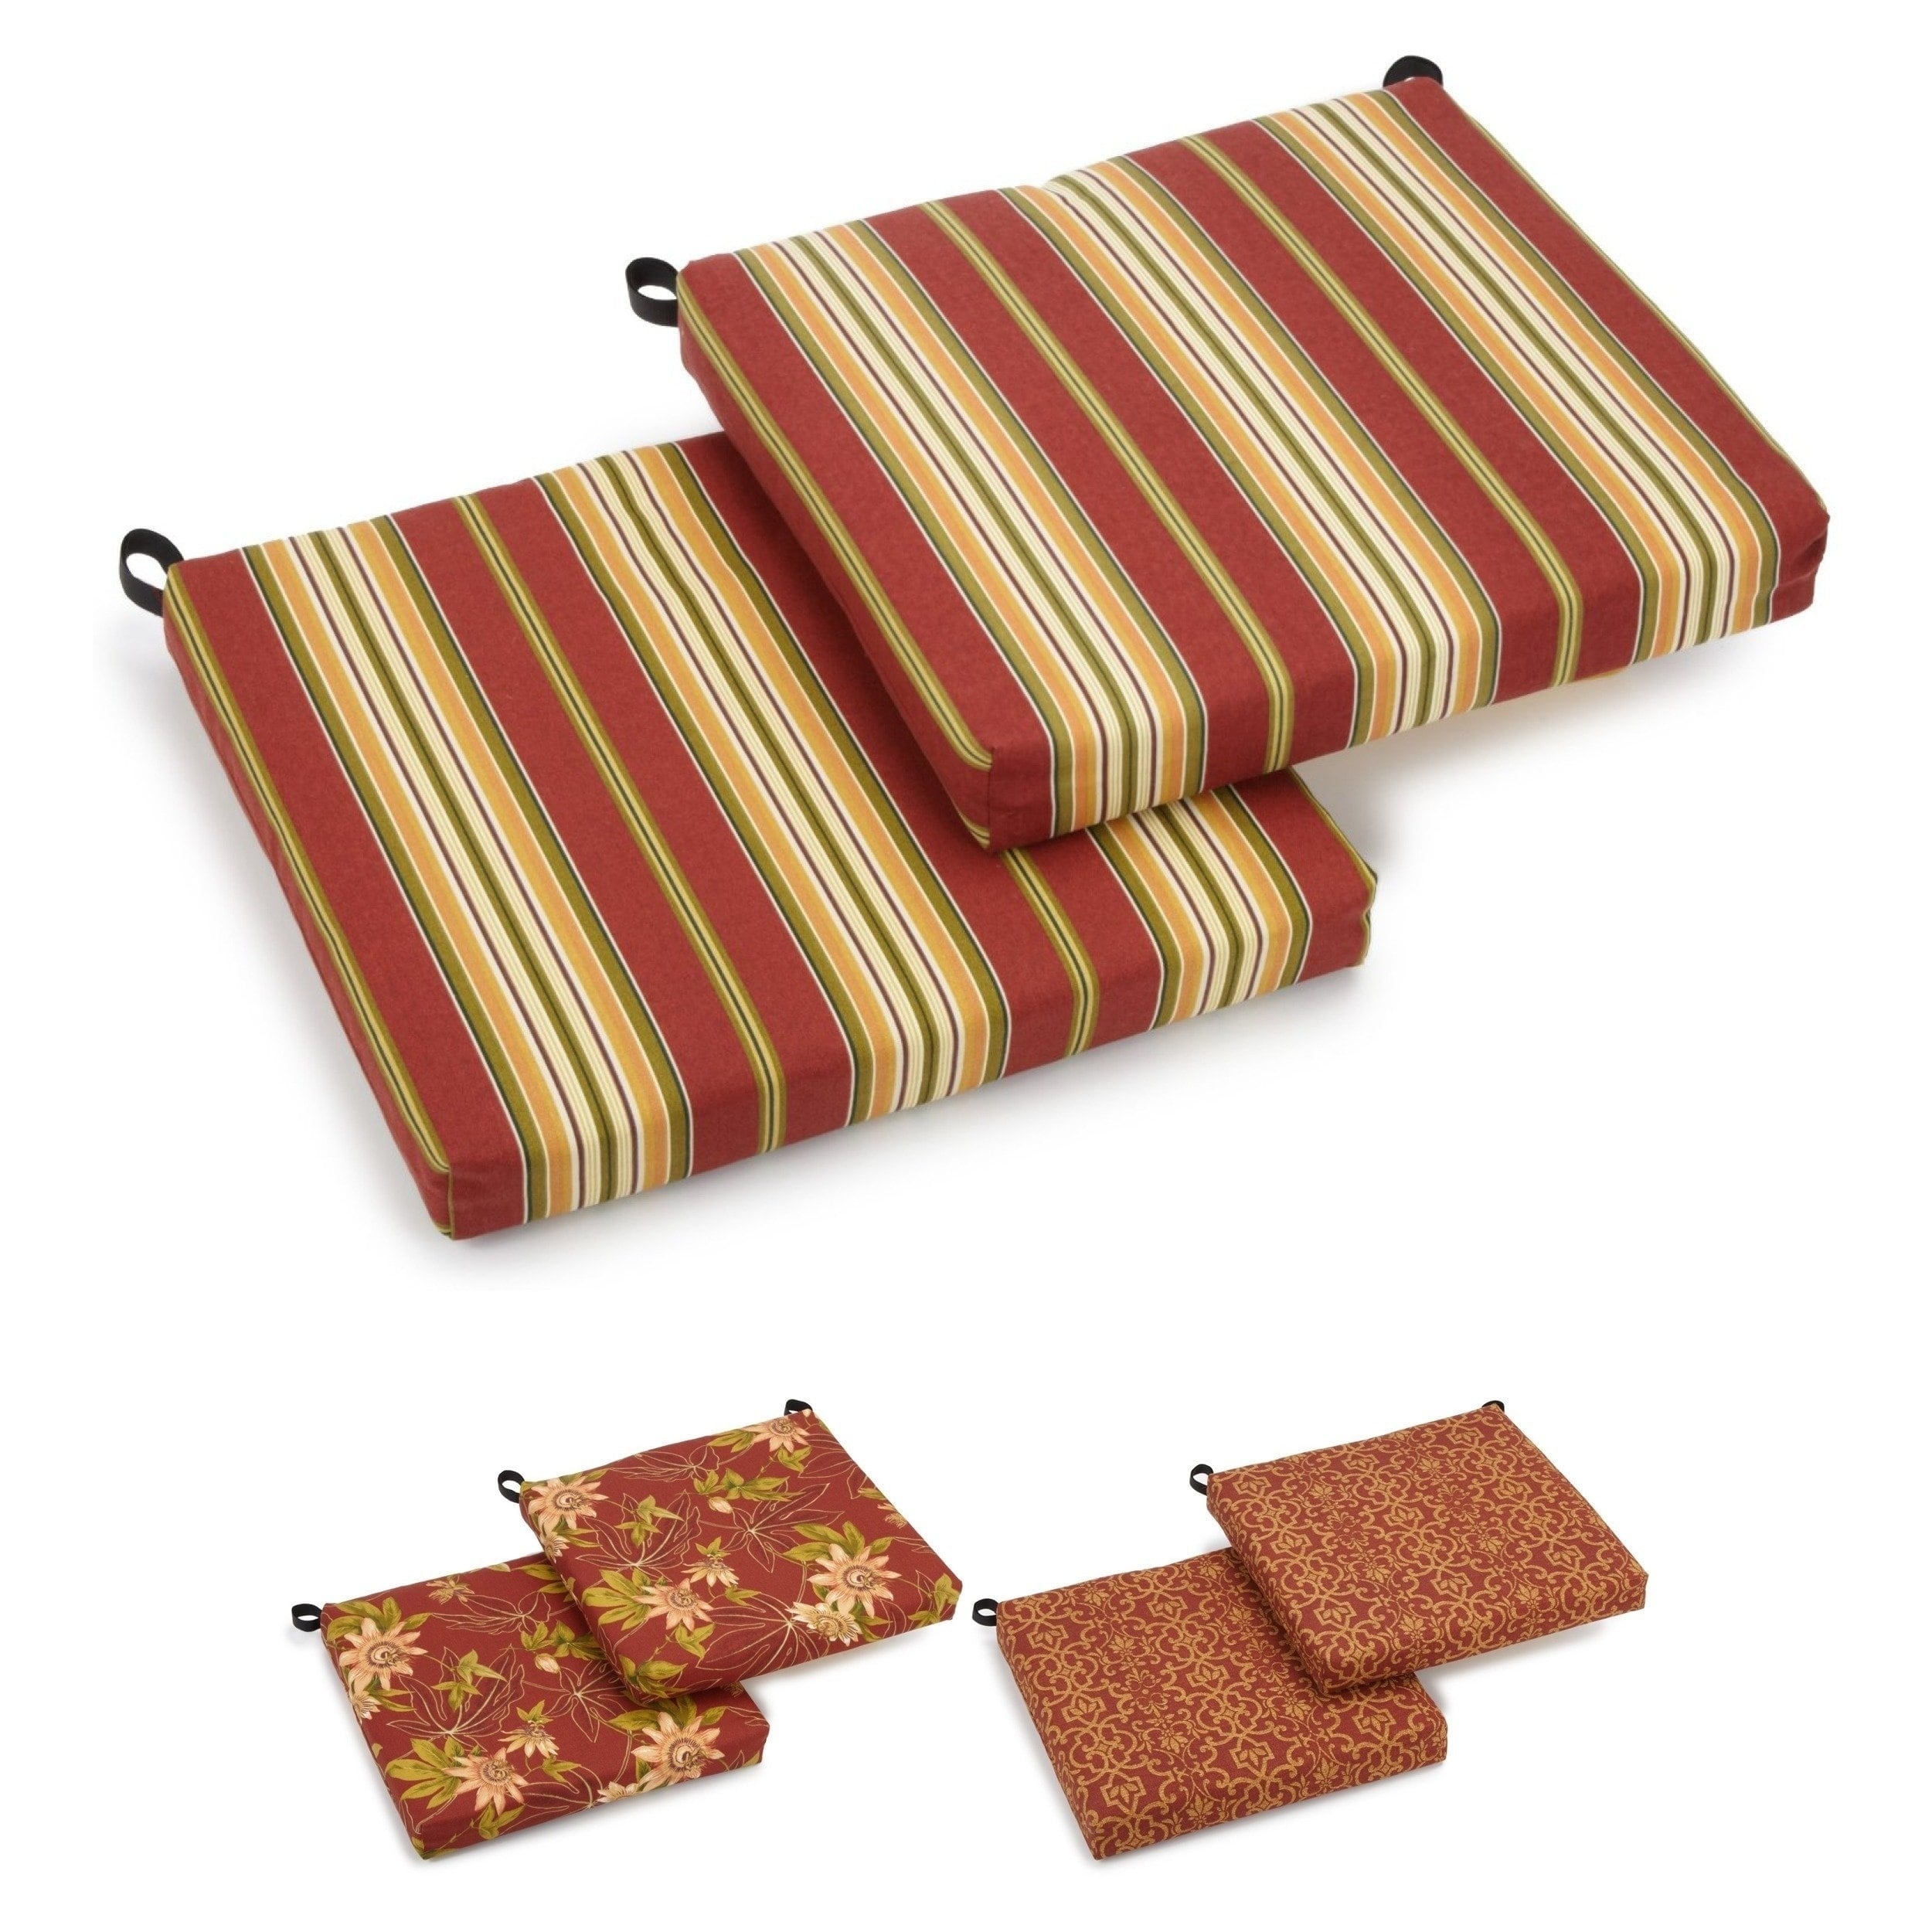 Blazing Needles 60-inch Indoor/Outdoor Bench Cushion - 60 Vanya Papprika